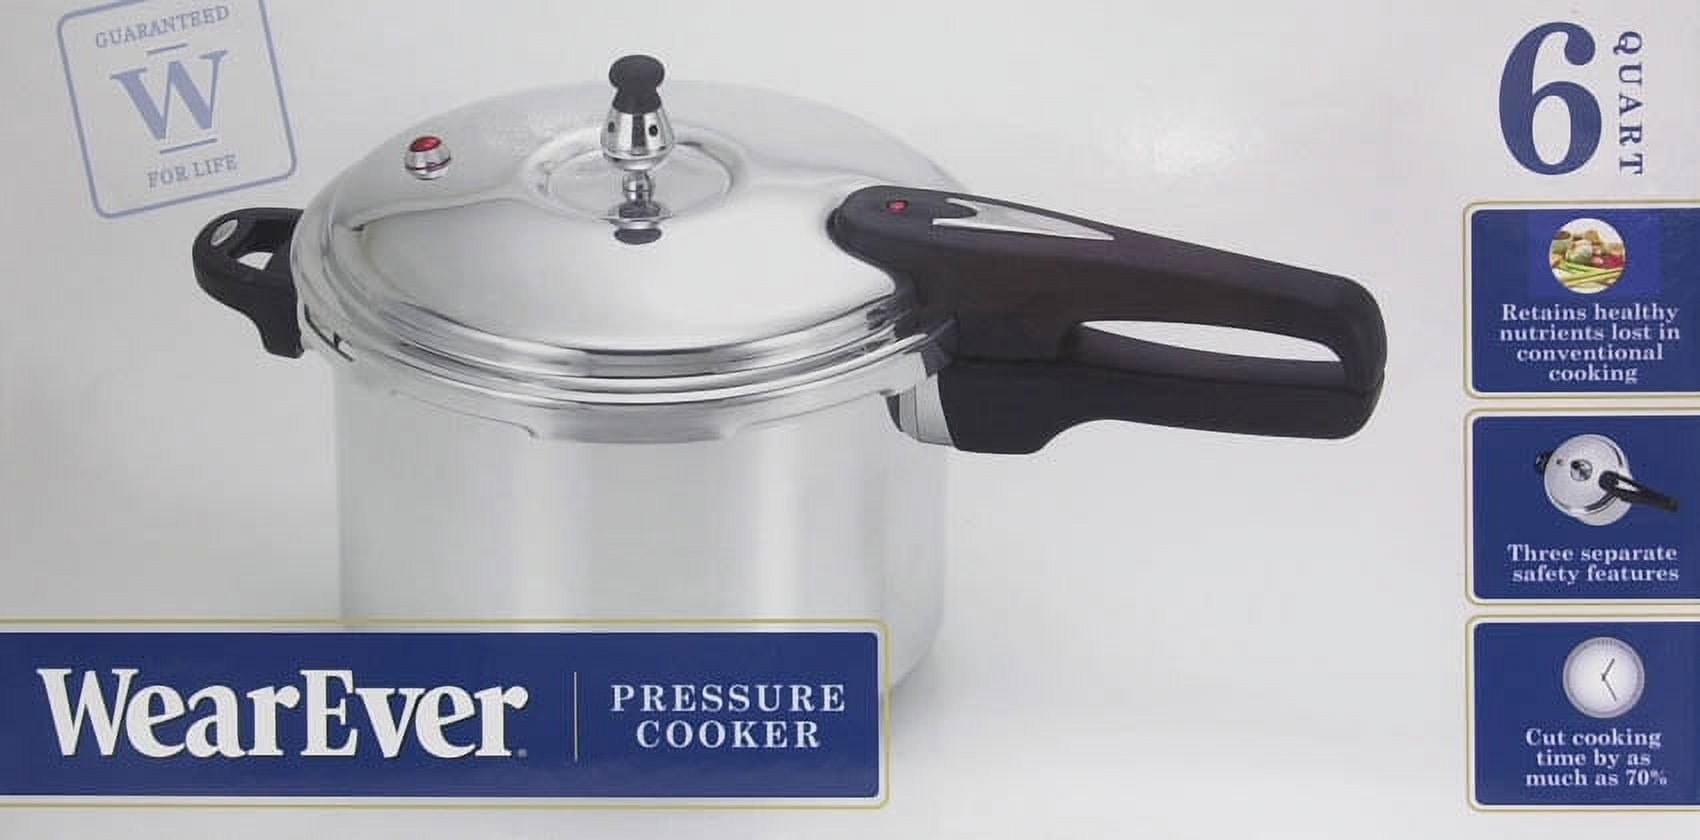 1950 Mail Order Wear Ever 4 Quart Pressure Cooker $8.89 – Olde Kitchen &  Home